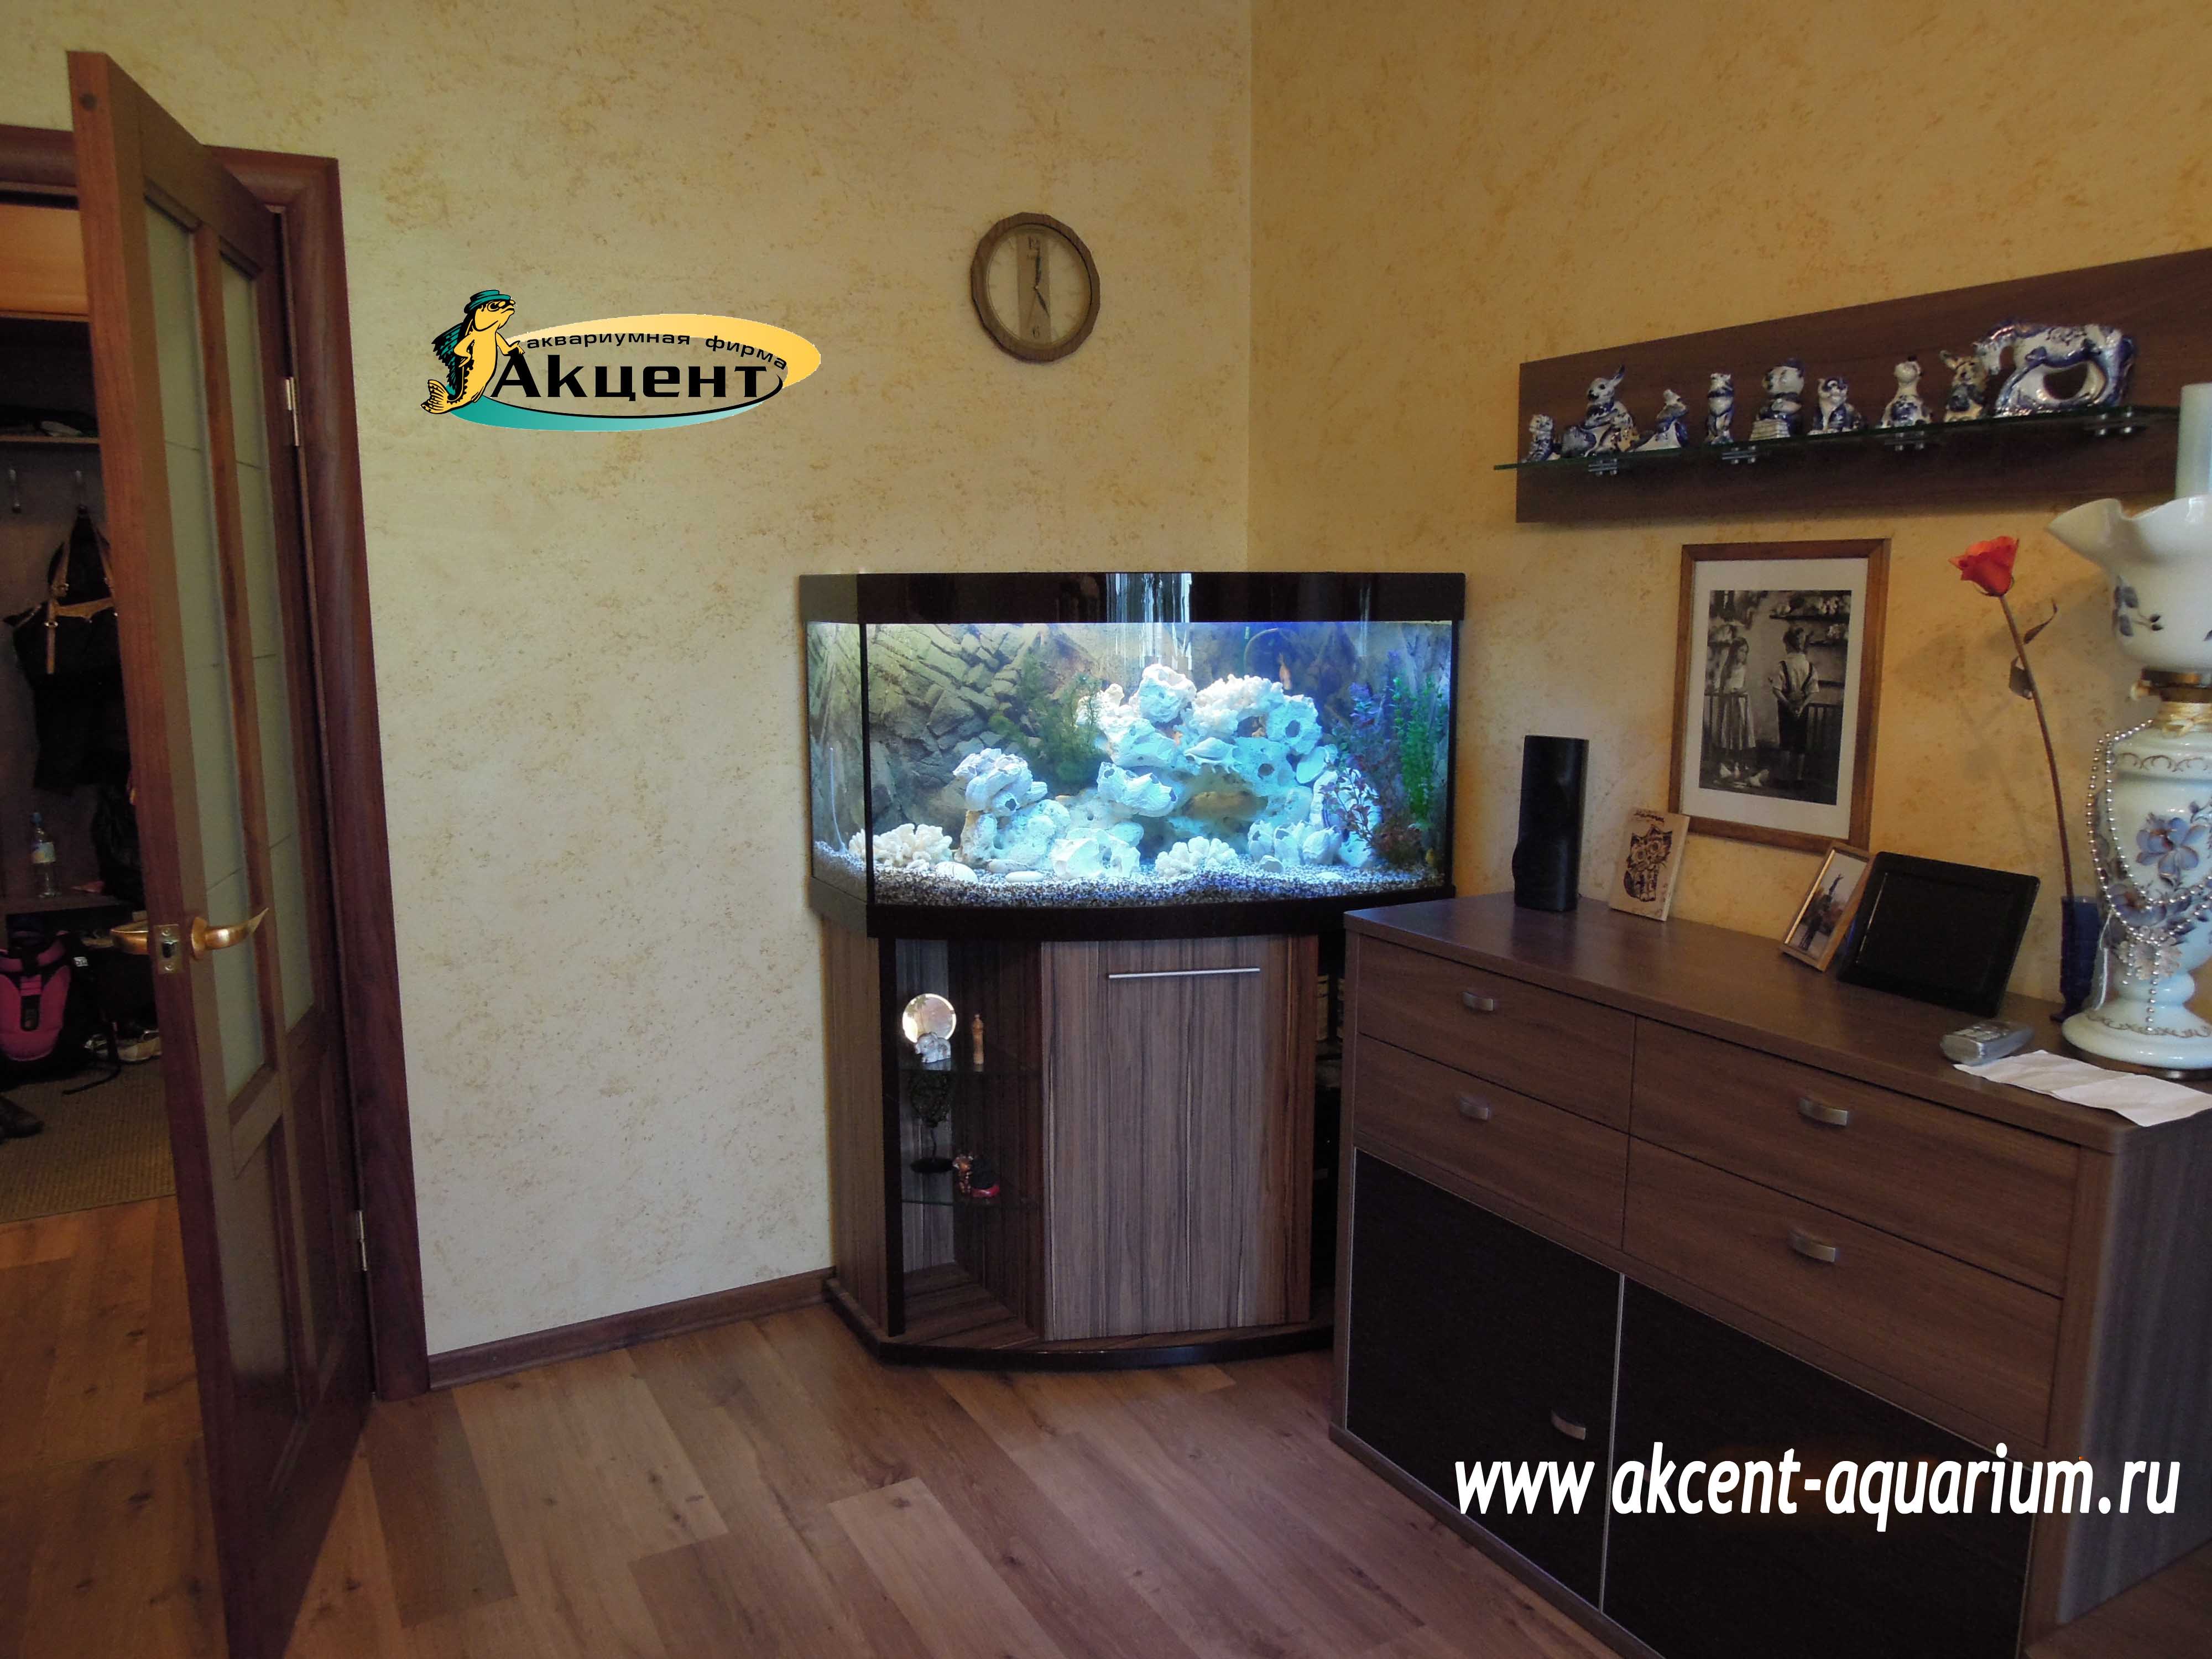 Акцент-Аквариум аквариум 350 литров с гнутым передним стеком,отделка акрил